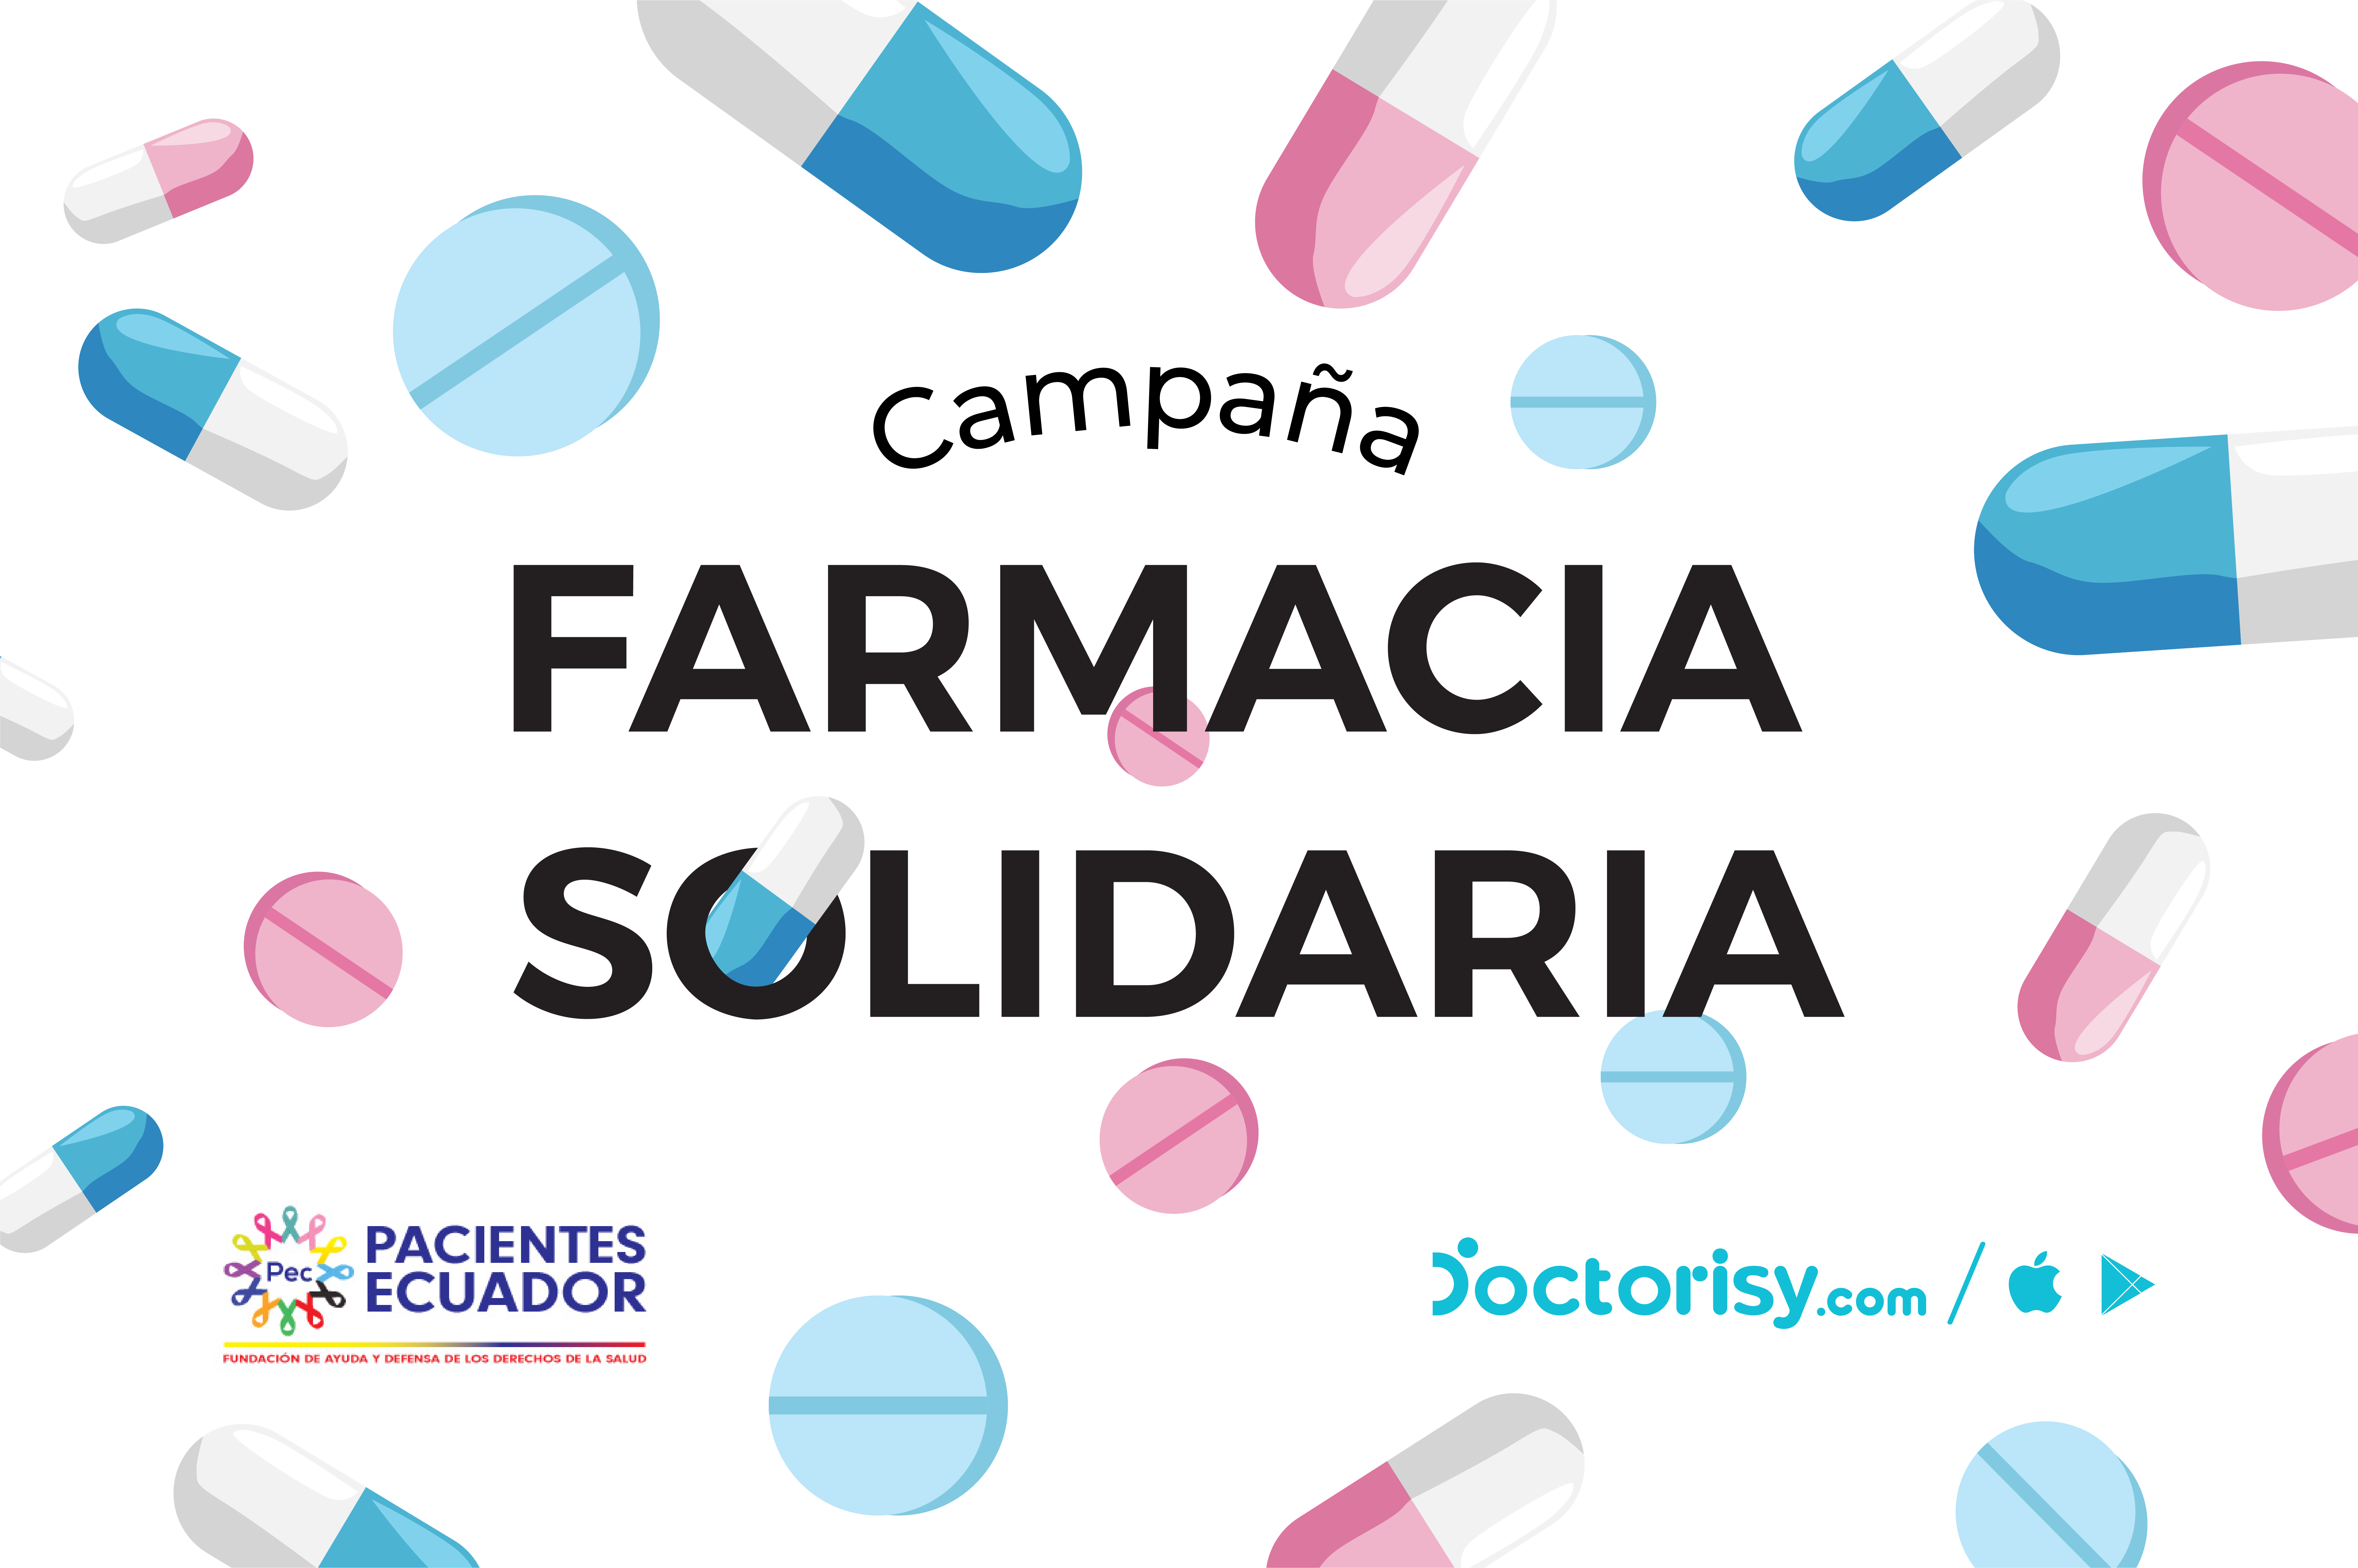 Únete a la campaña FARMACIA SOLIDARIA con la Fundación Pacientes Ecuador -  Doctorisy